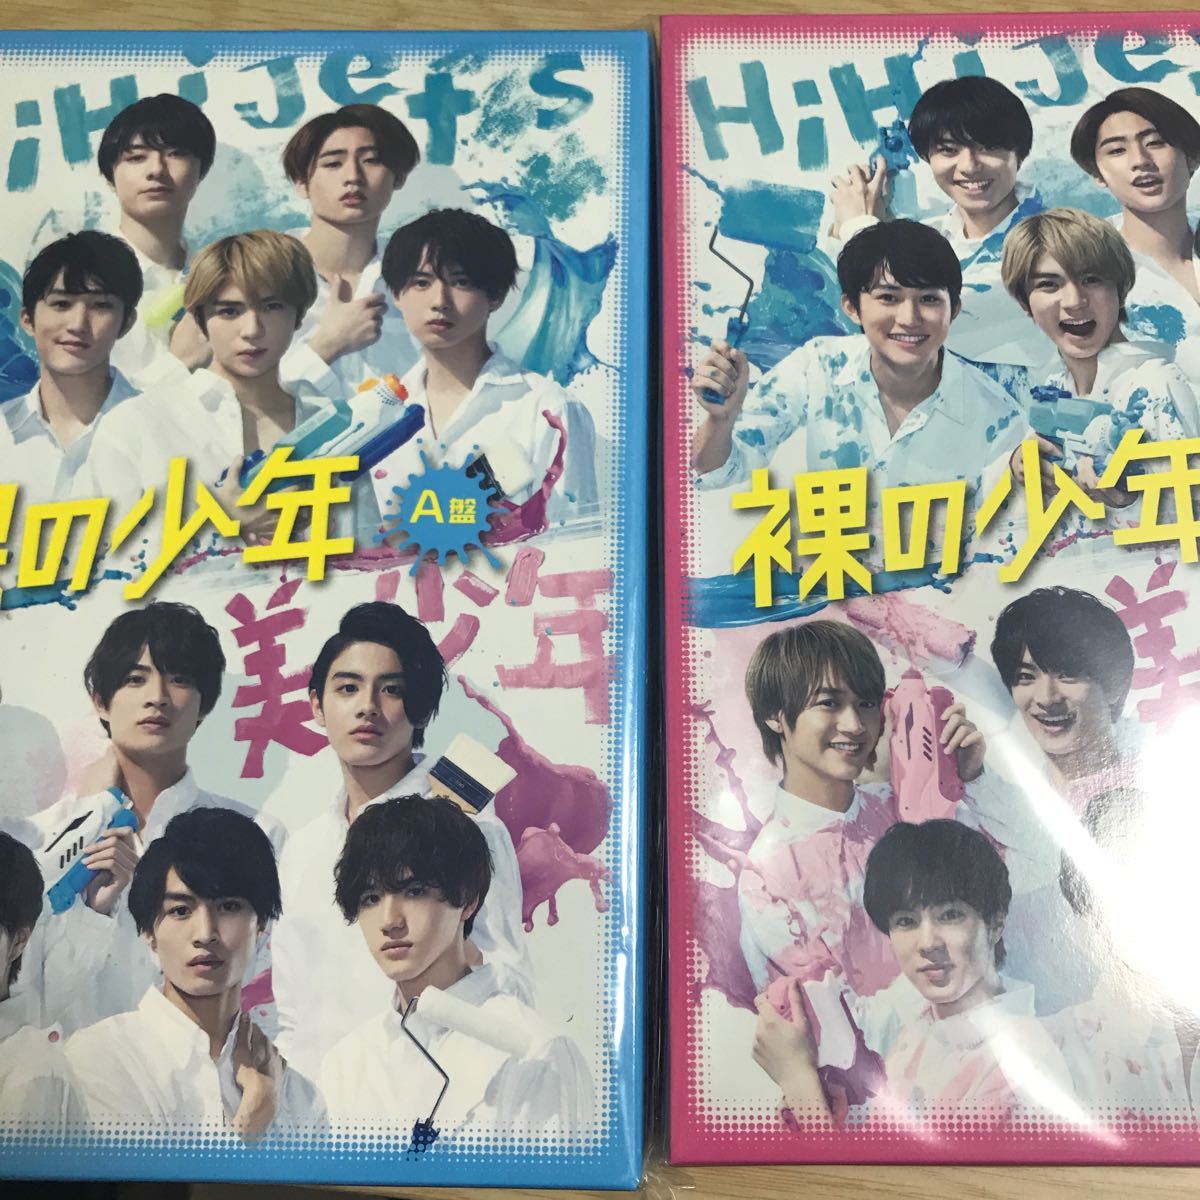 裸の少年 DVD B盤 - blog.knak.jp